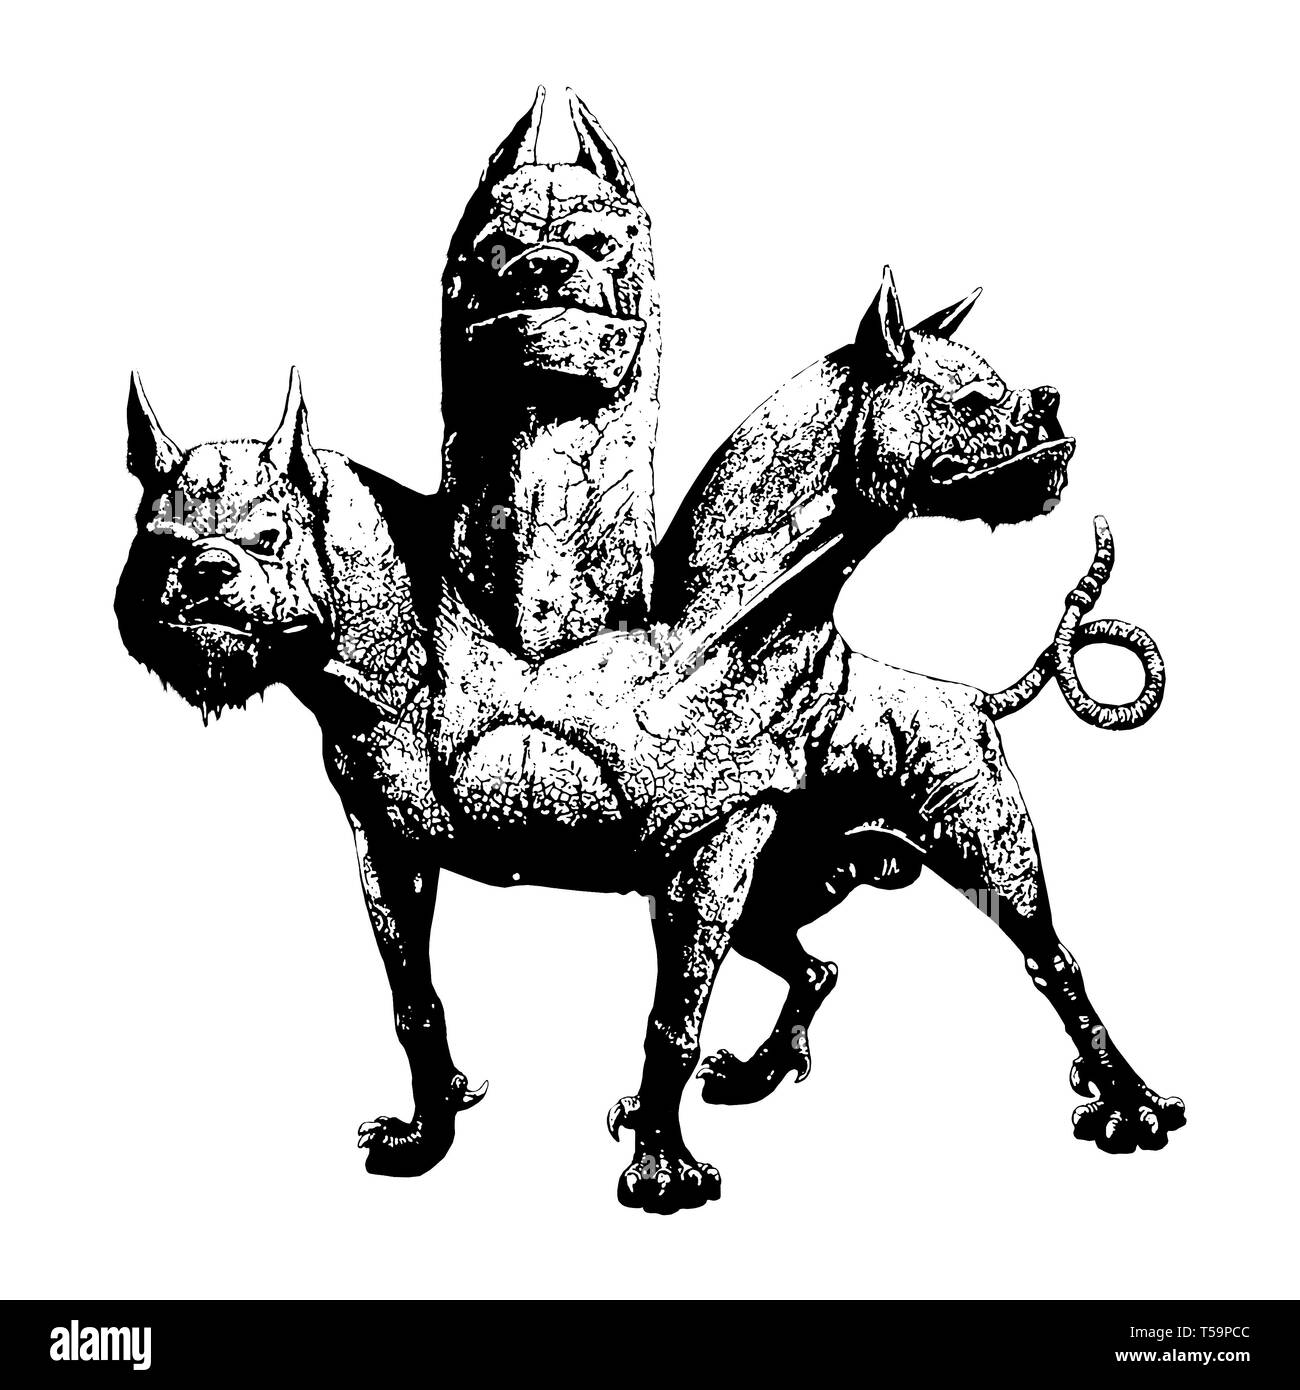 Multi vorangegangen Hund Cerberus Abbildung. Hund der Hades. Der griechischen Mythologie. Stockfoto